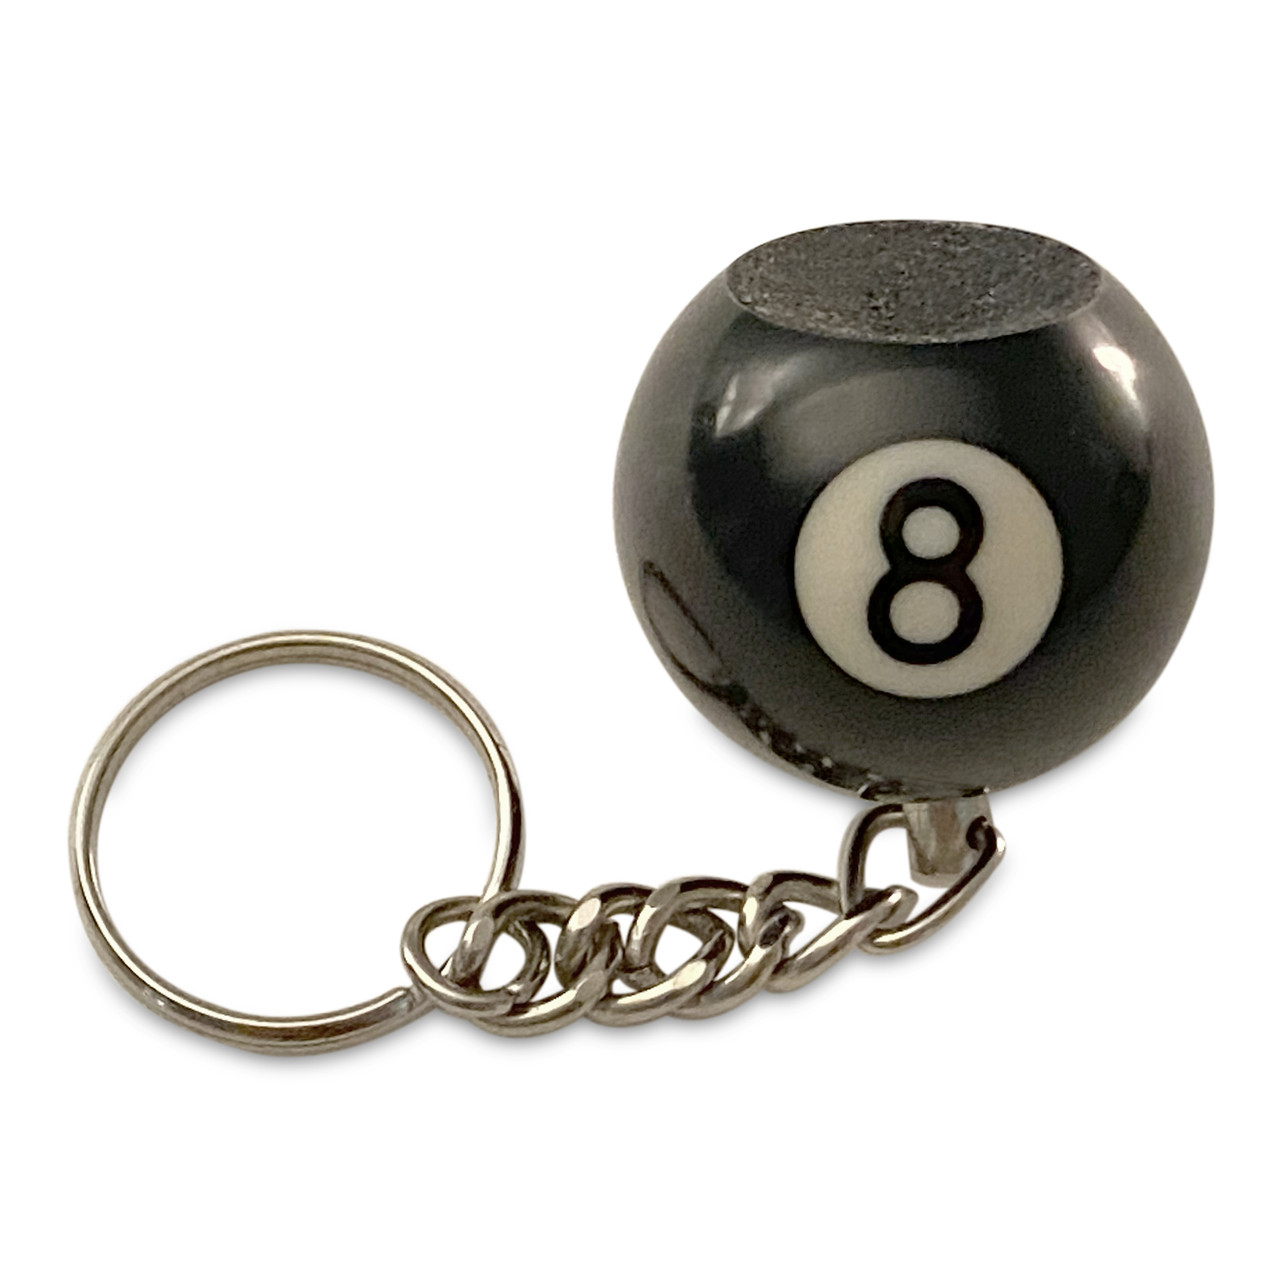 8 Ball key chain 